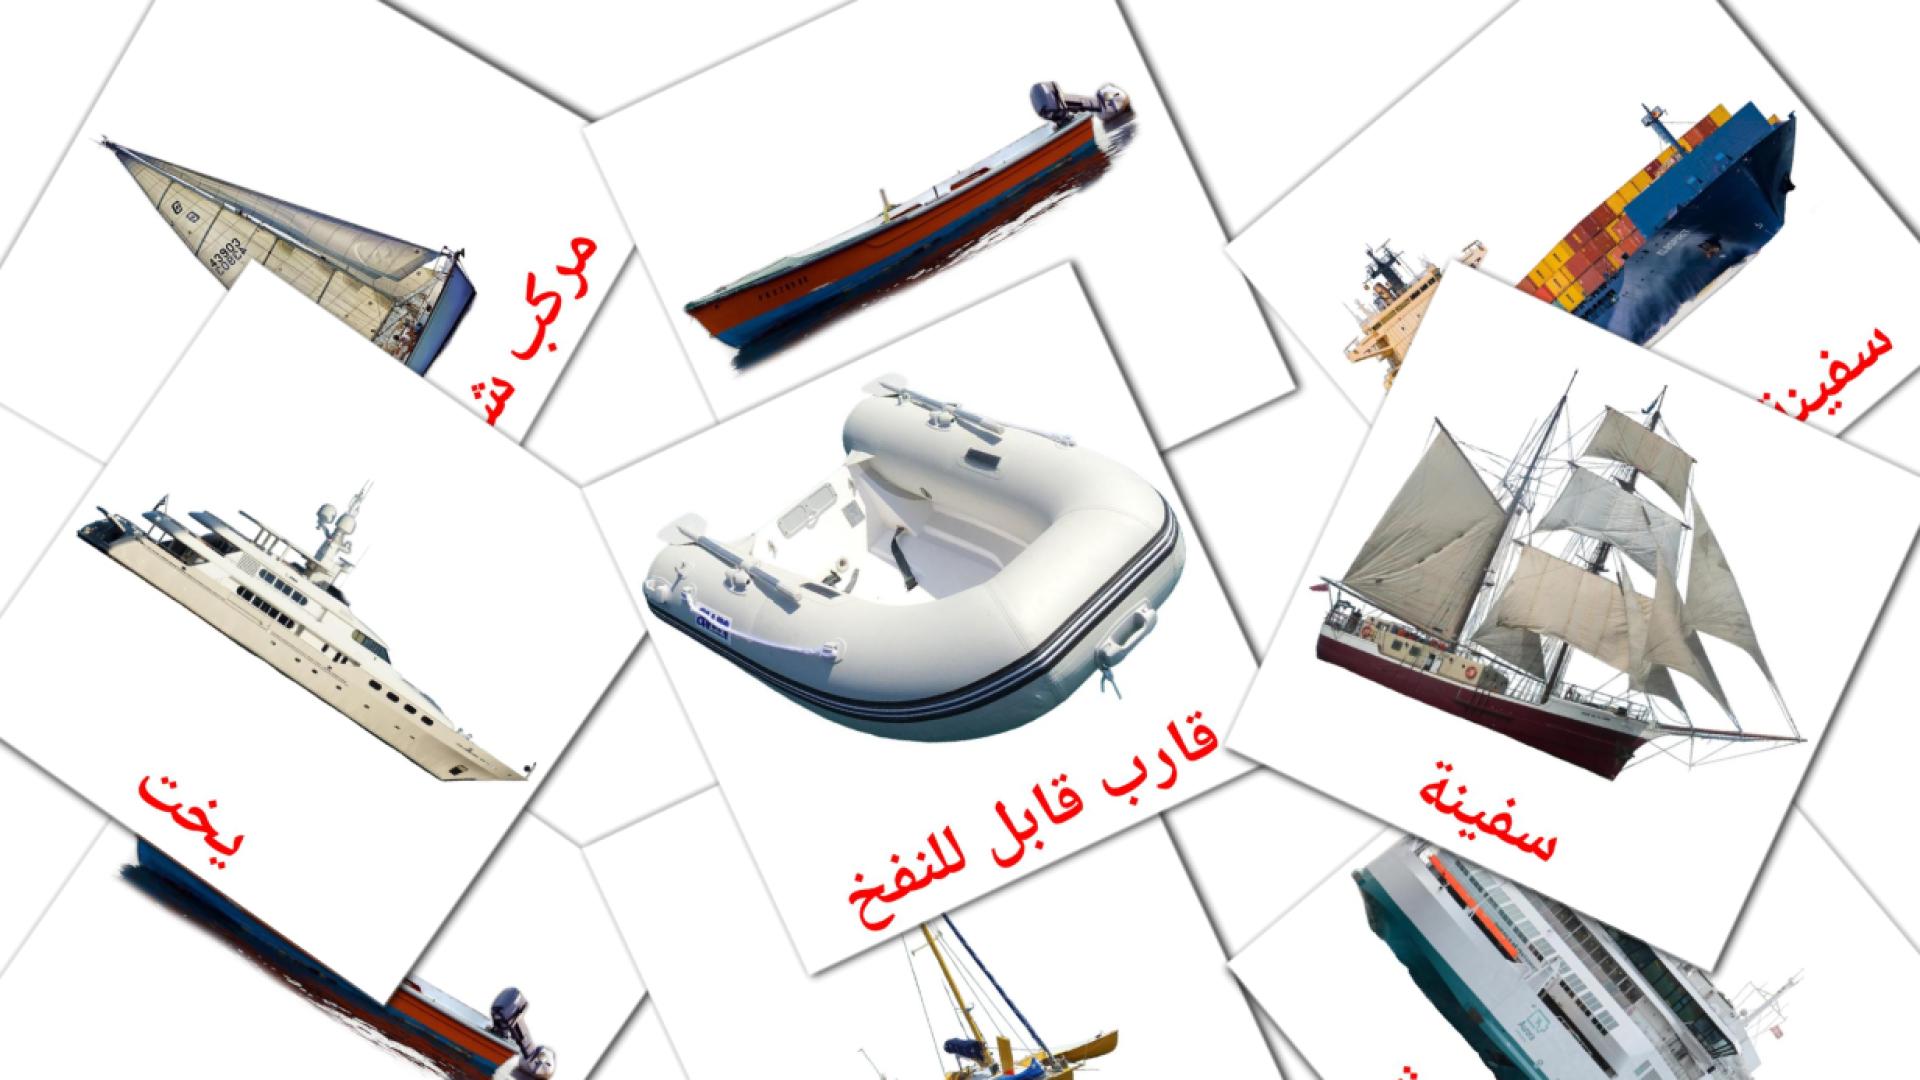 Watertransport - arabische woordenschatkaarten